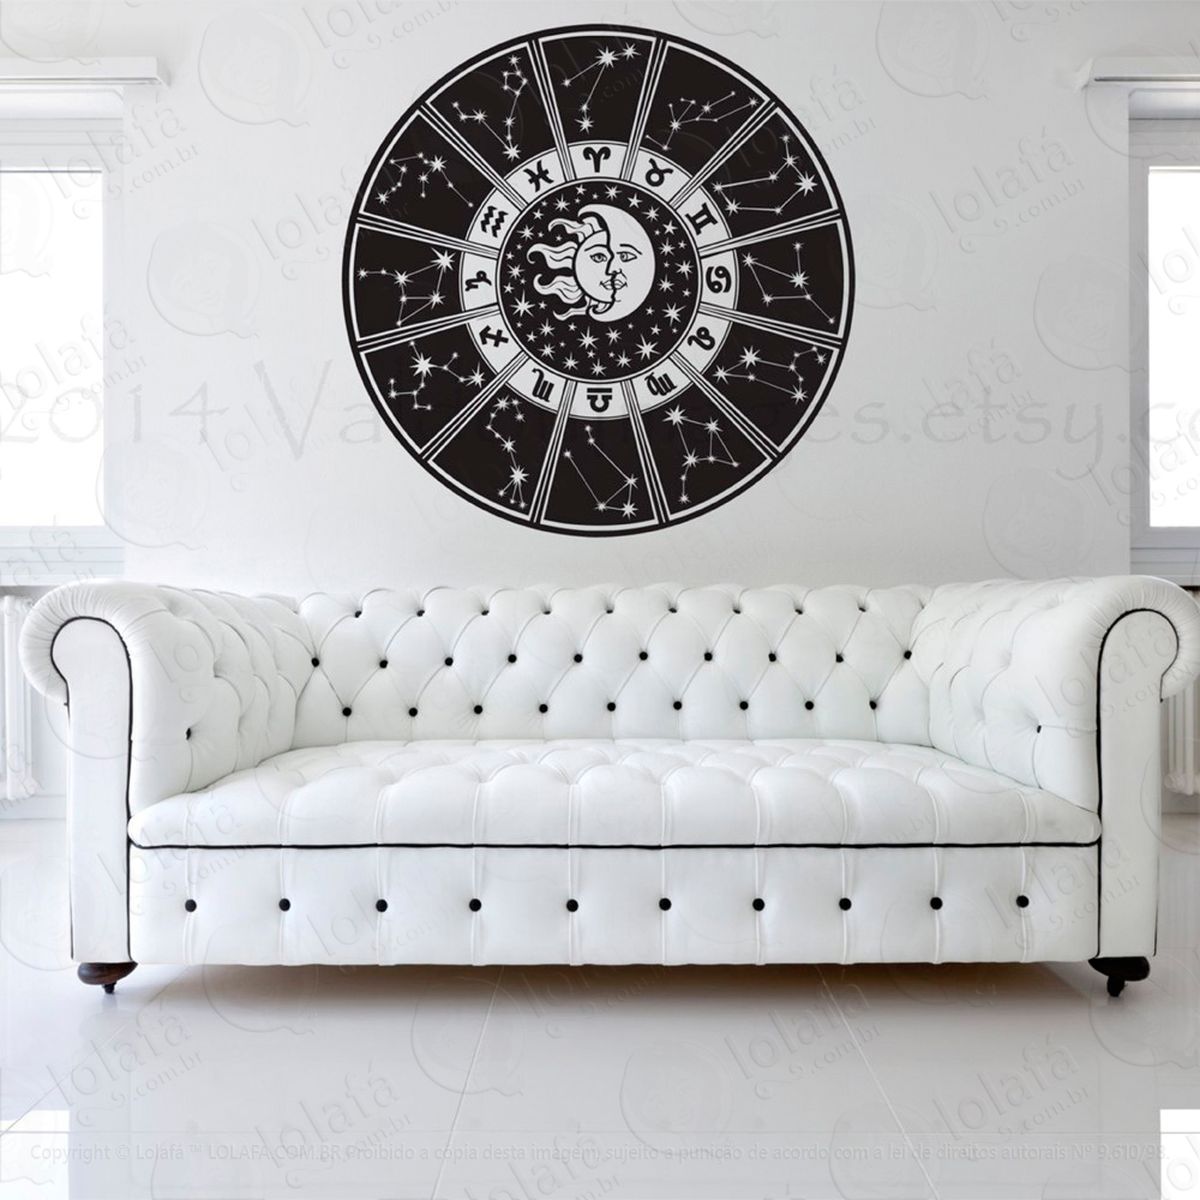 astrologia adesivo de parede decorativo para casa, sala, quarto e vidro - mod:8